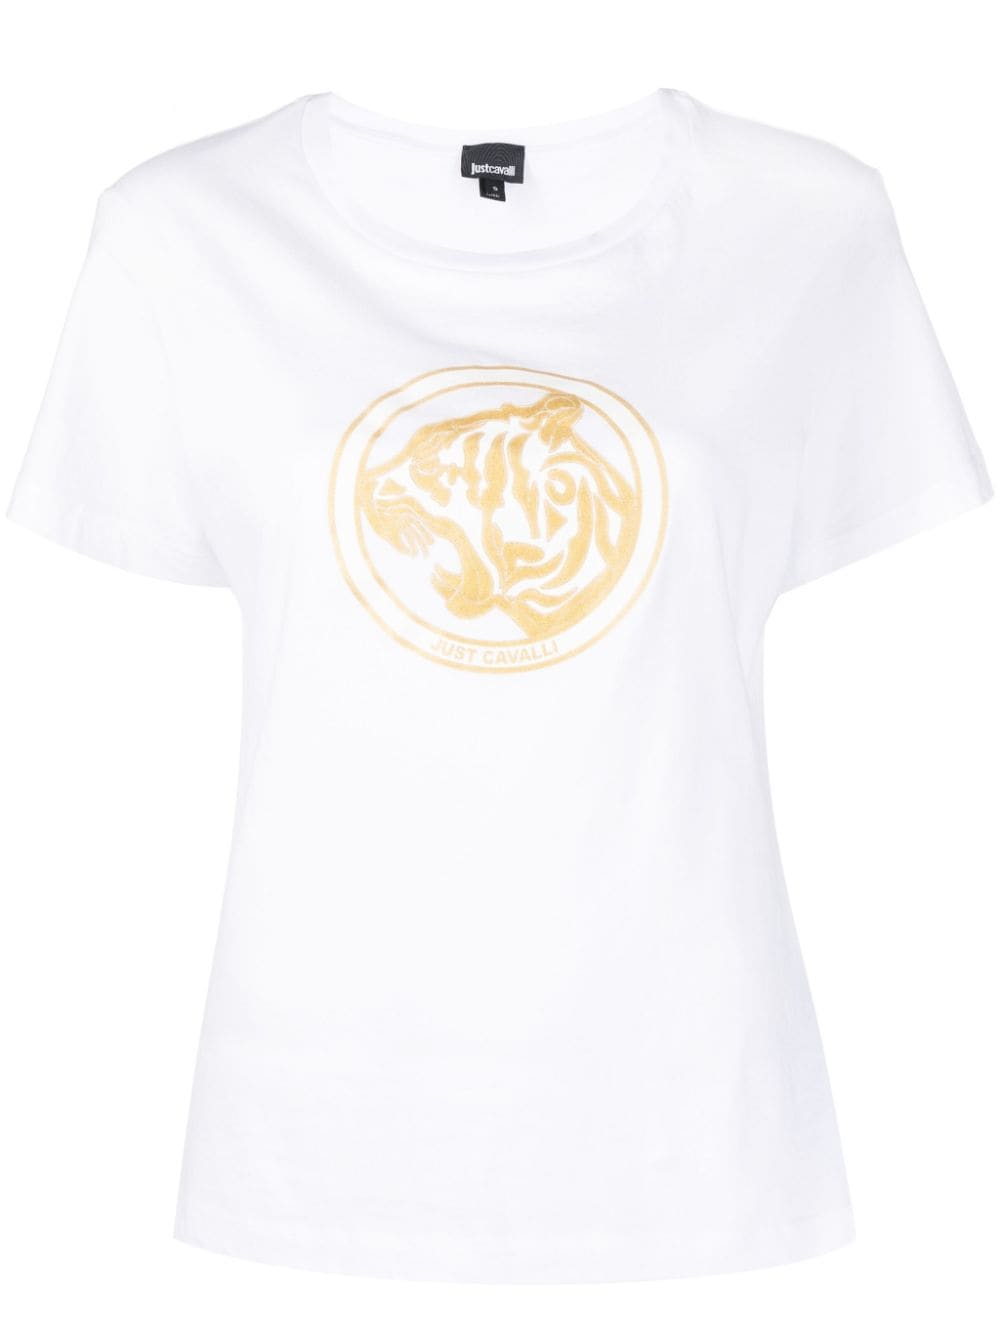 фото Just cavalli футболка с логотипом